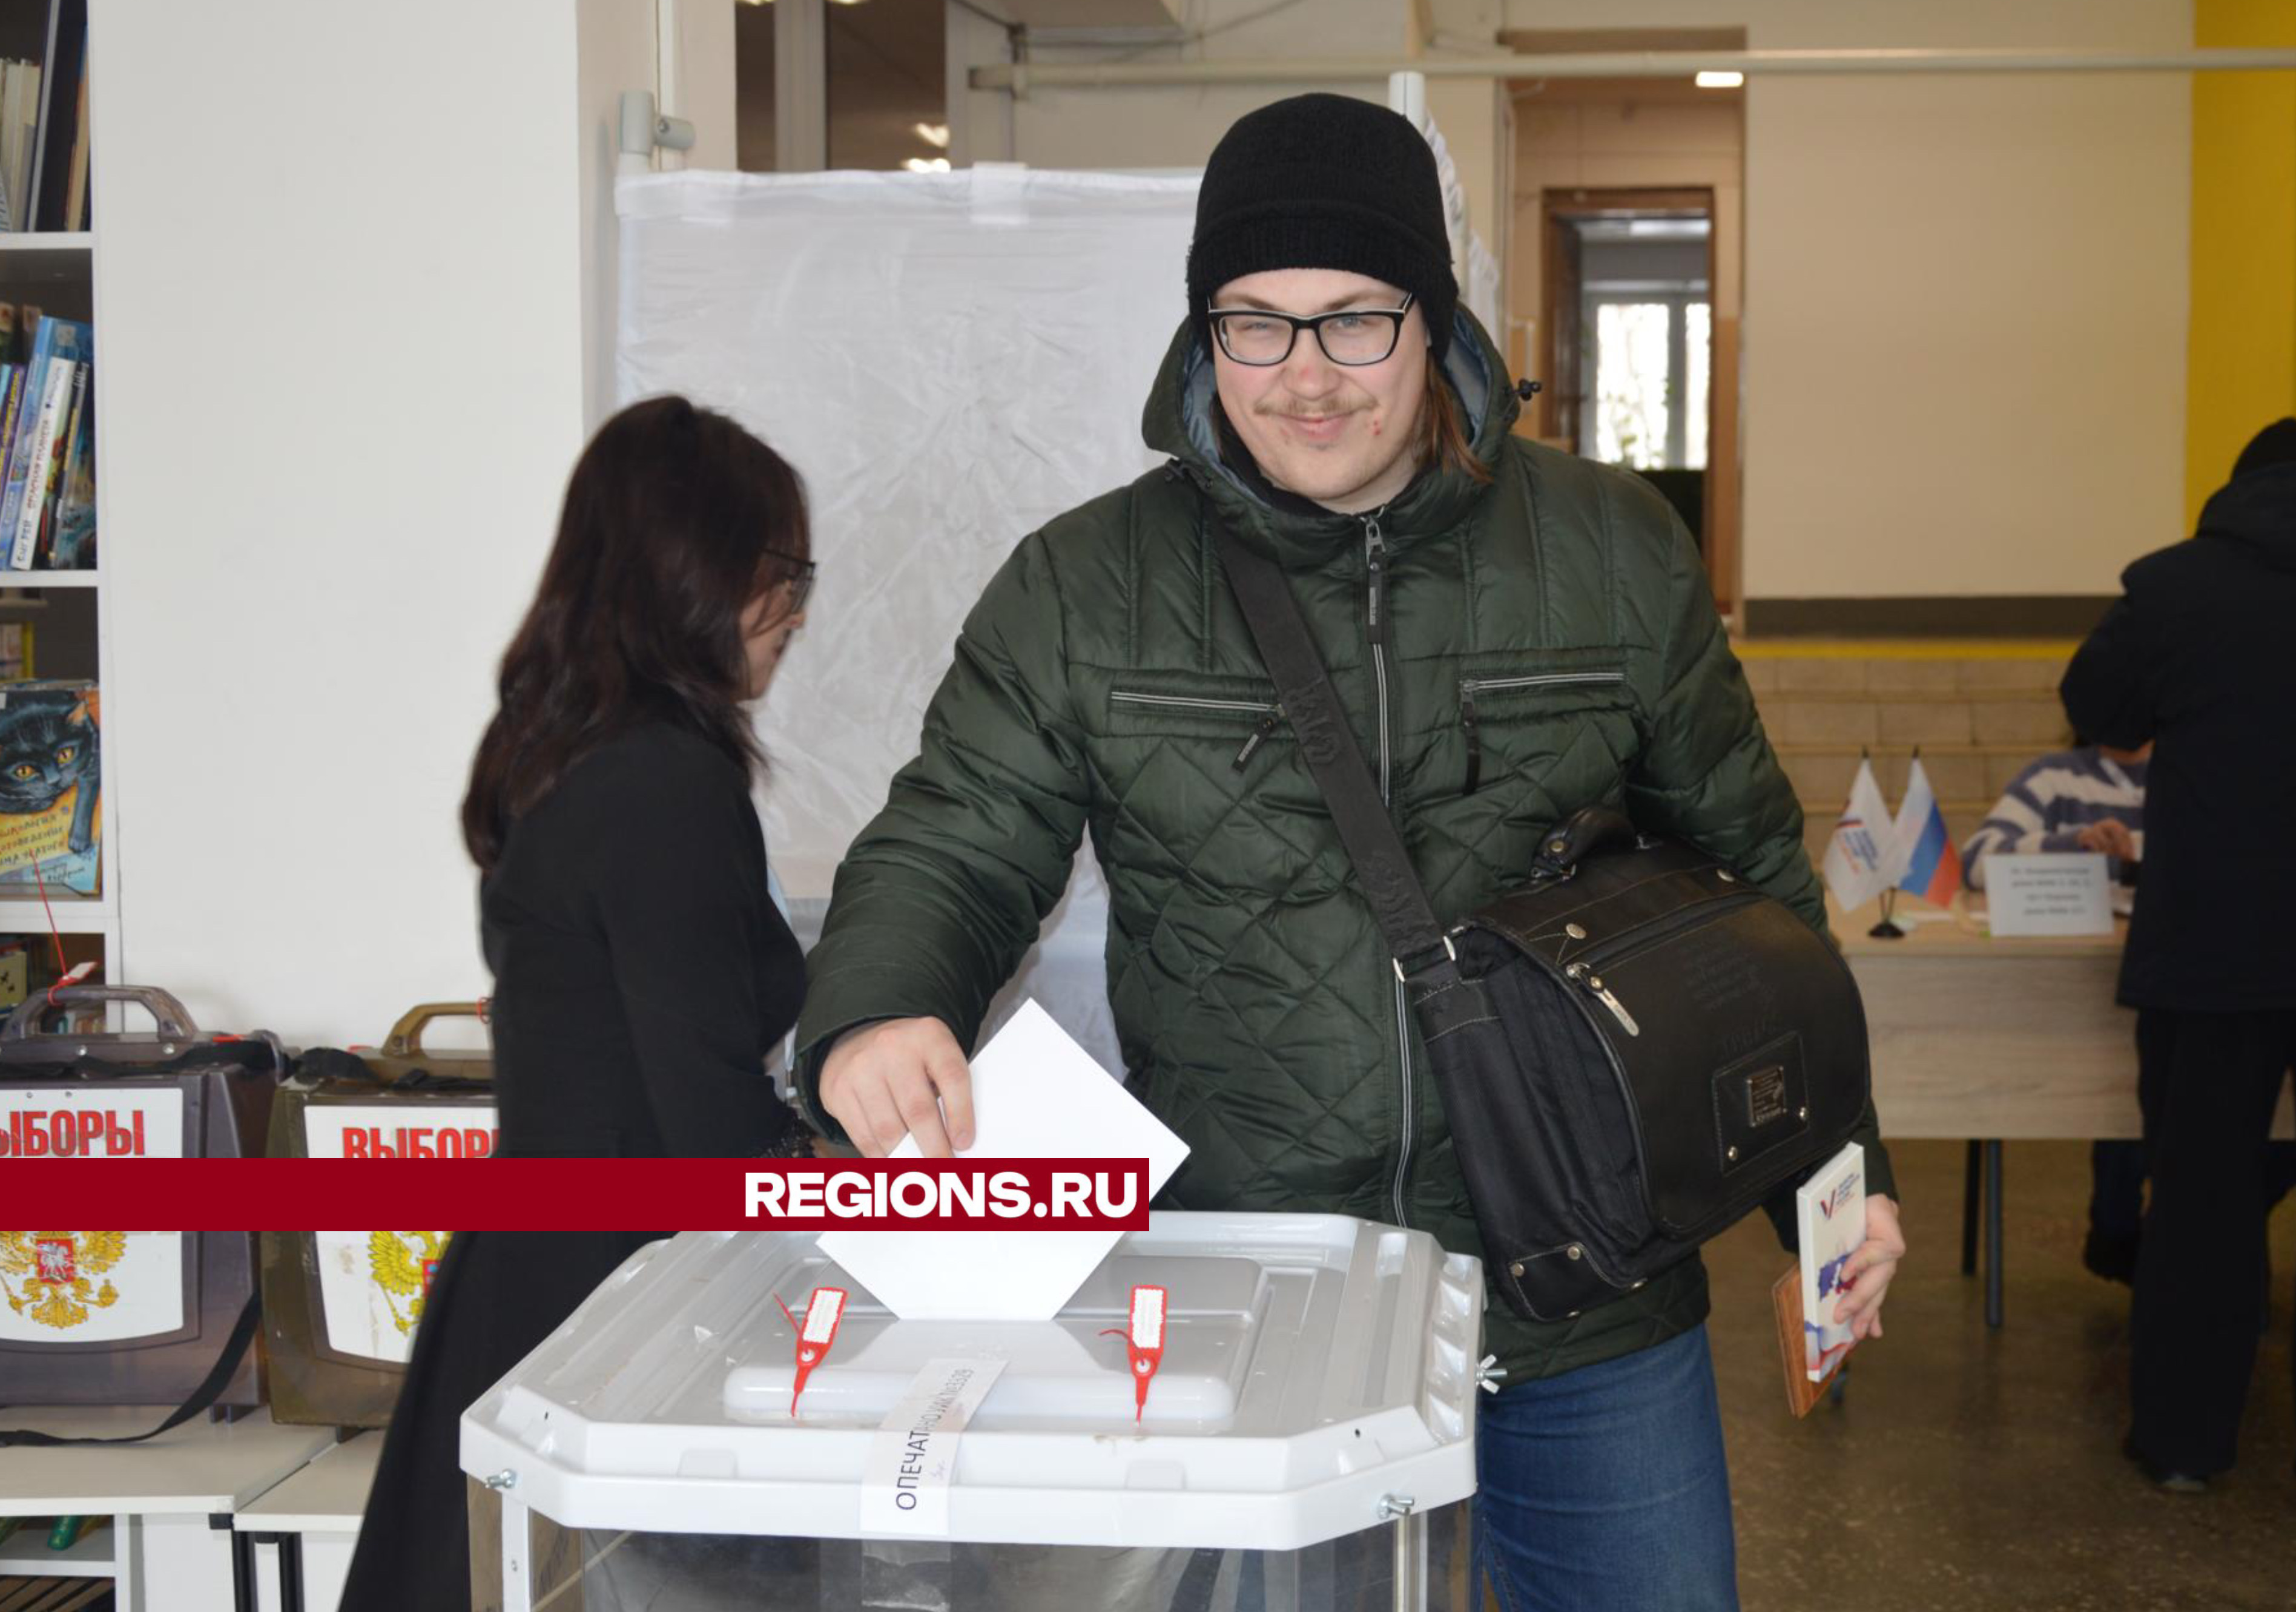 Впервые голосующие молодые шатуряне делятся впечатлениями